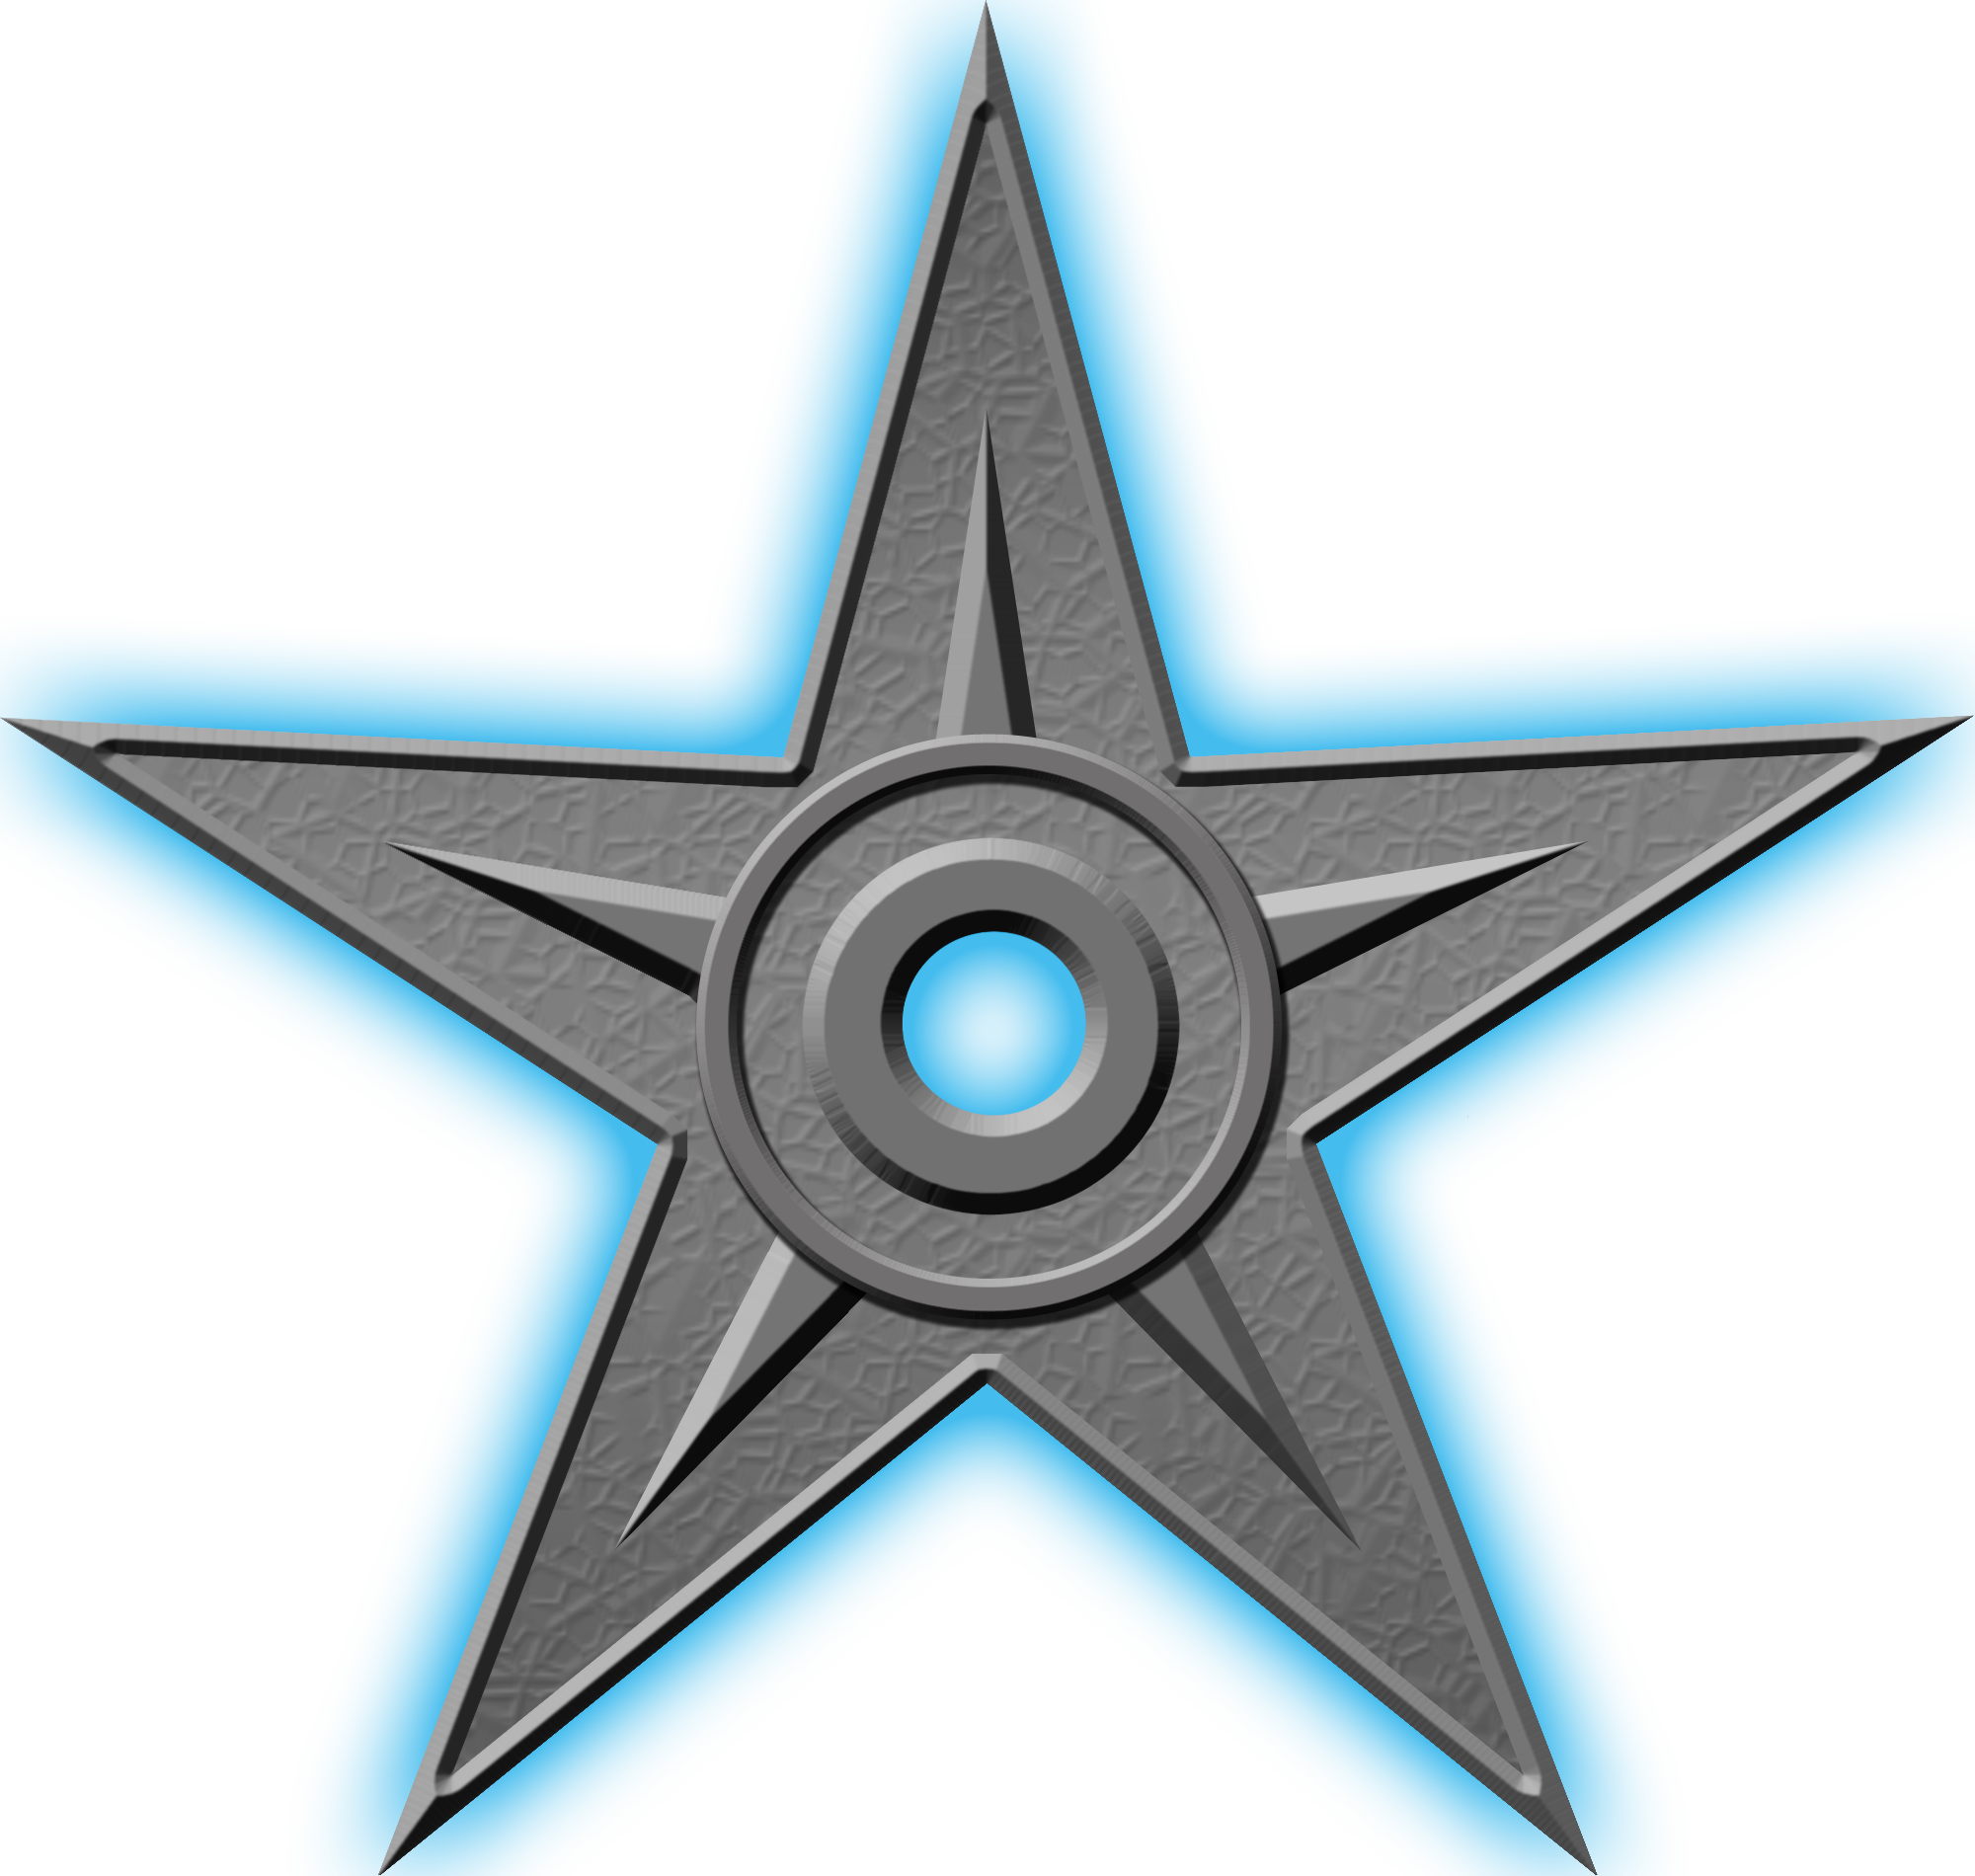 Орден #1 «За выдающиеся заслуги», присвоен 3 мая 2006 участником Nevermind за «огромный вклад в статьи о Германии и множество других замечательных статей»